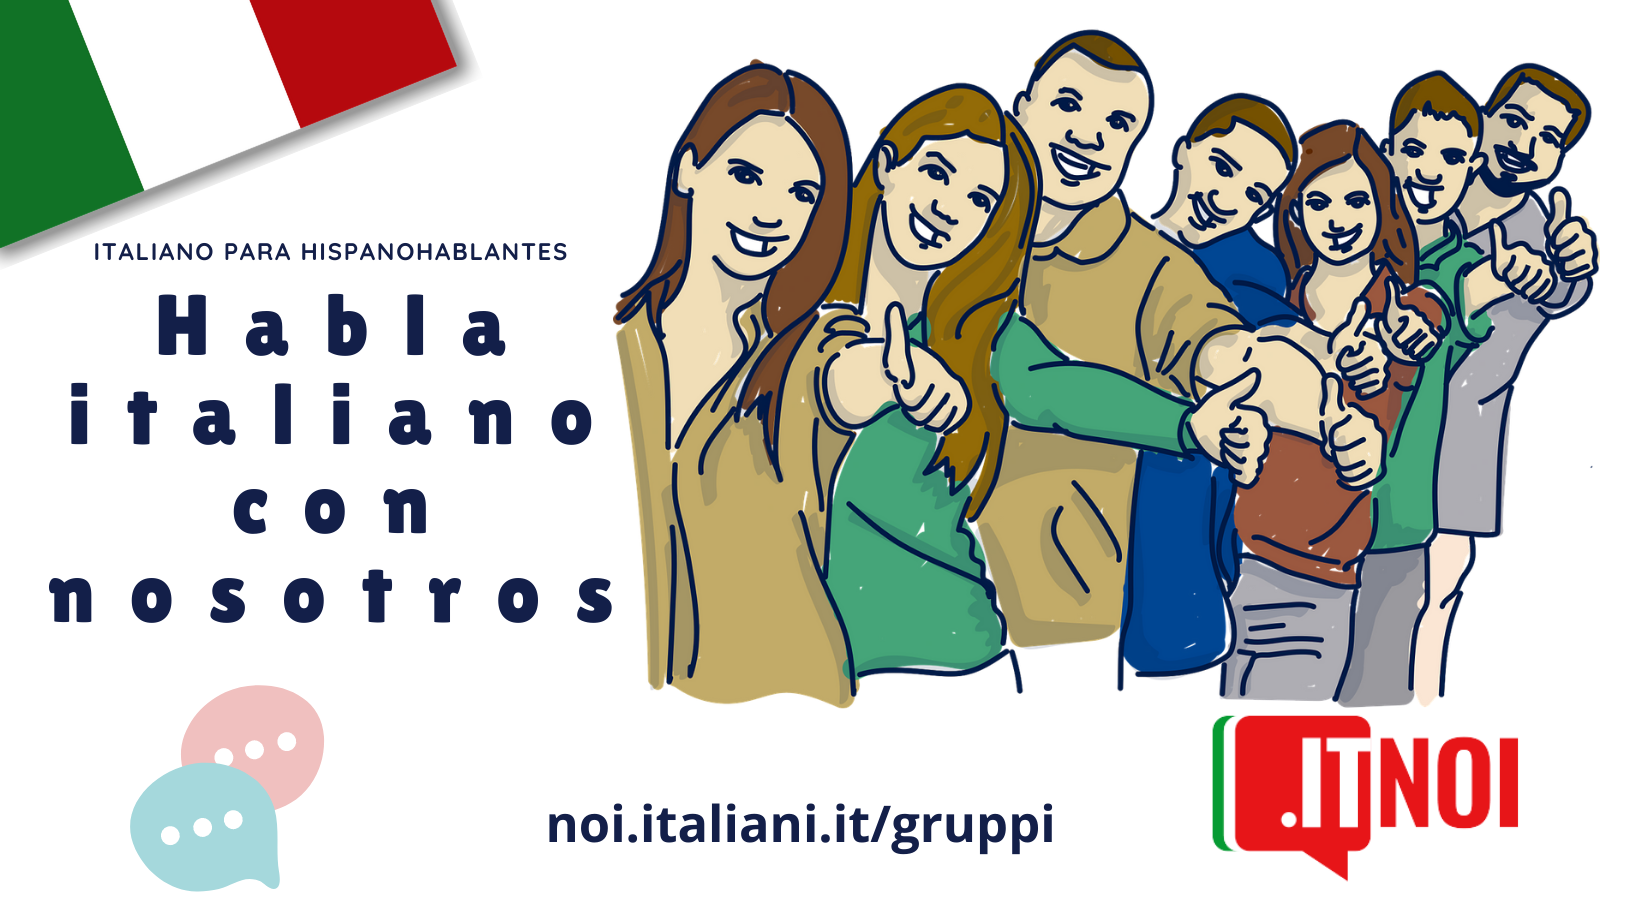 Su itNoi.it, parte il Gruppo di lingua italiana